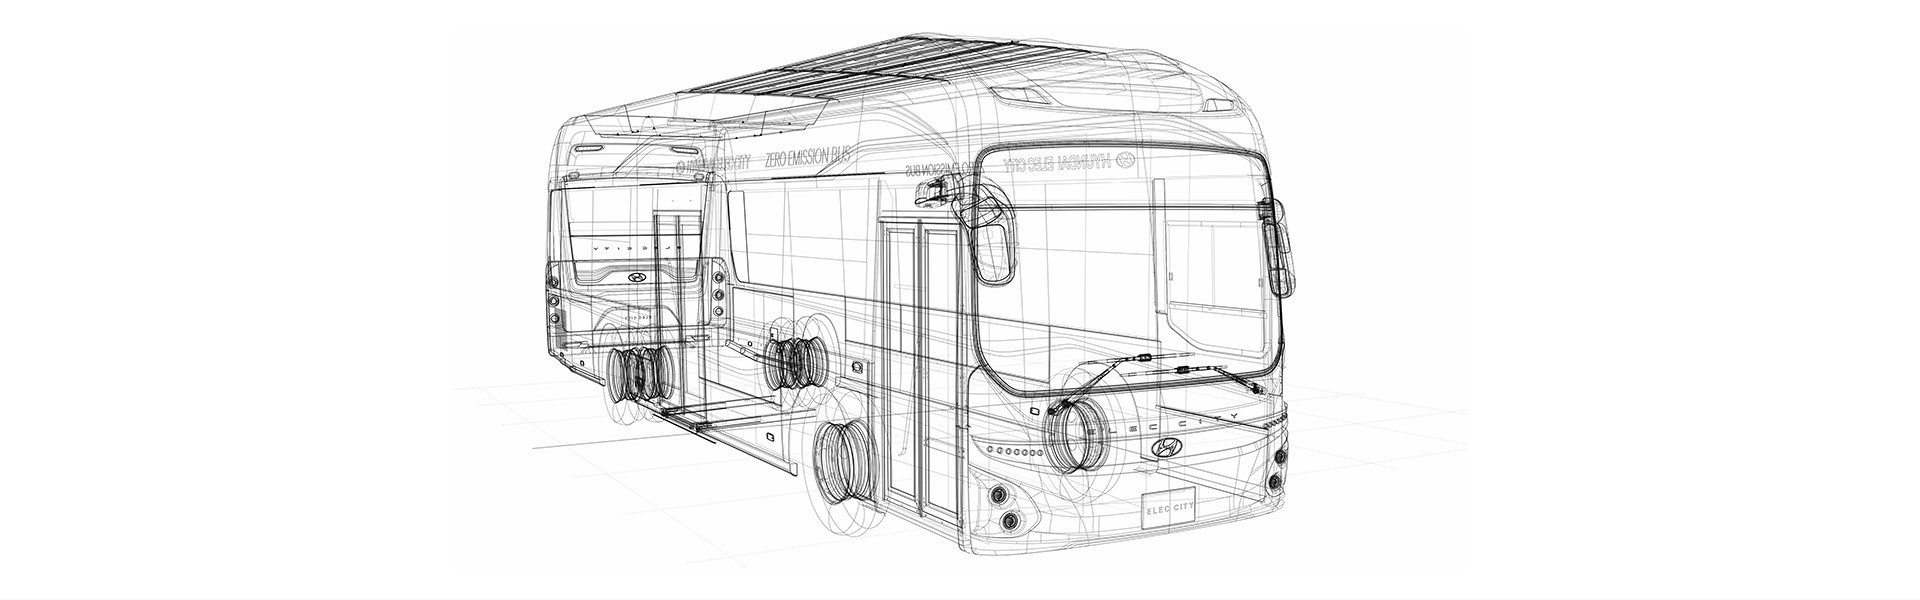 proceso de diseño computarizado - Hyundai buses Ecuador